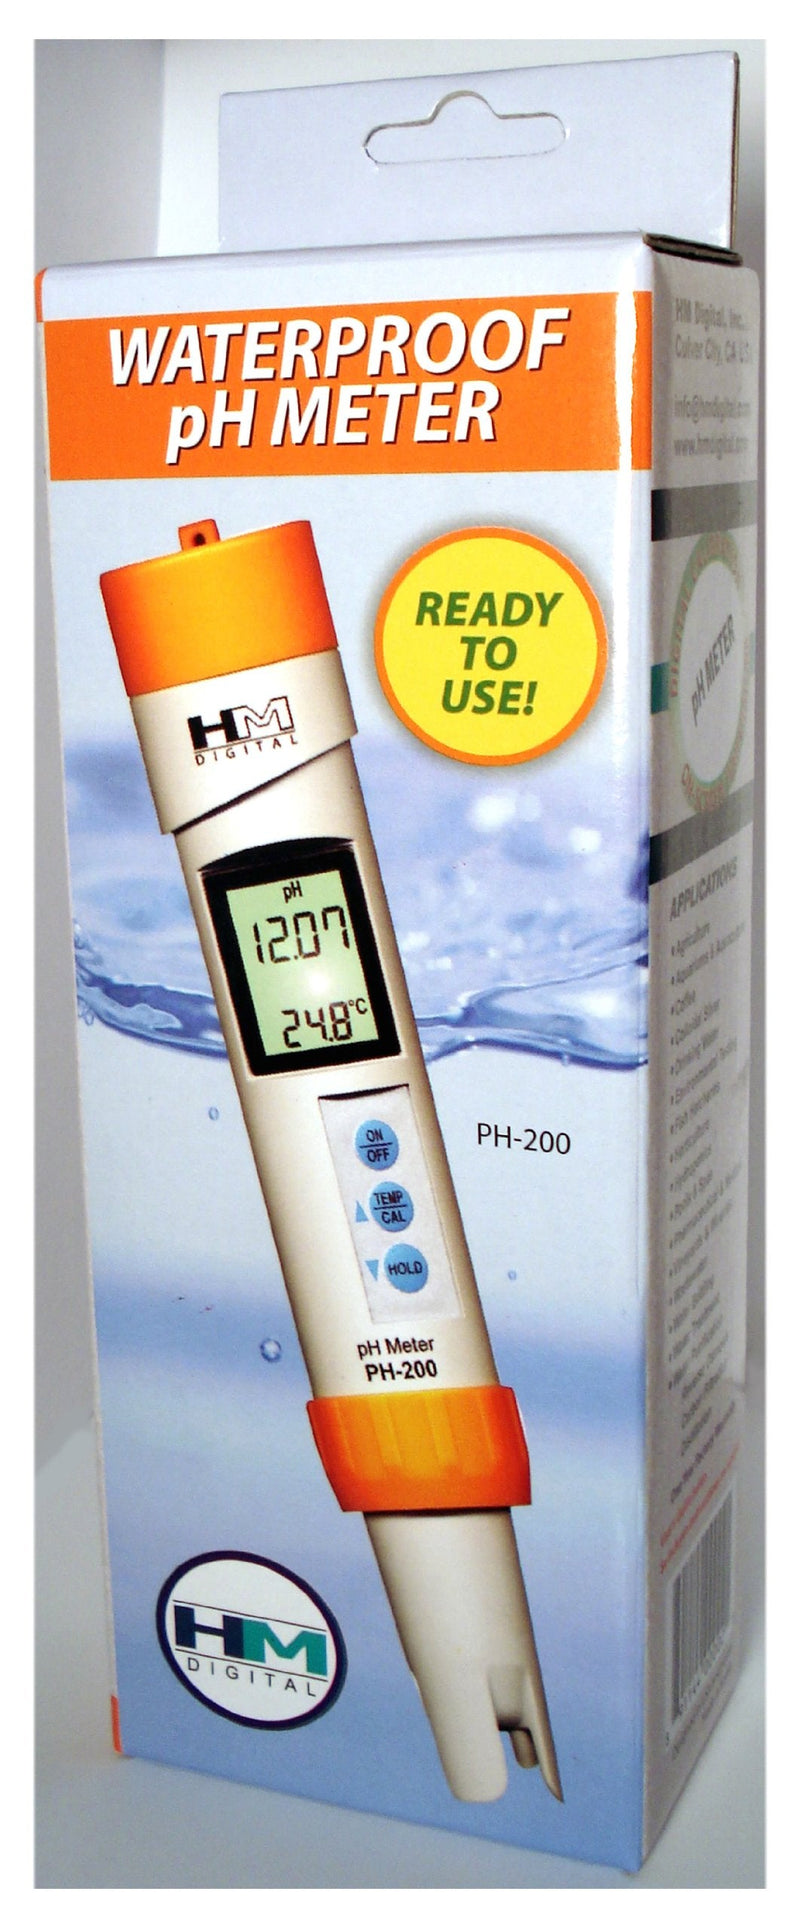 [Australia - AusPower] - HM Digital PH-200 Waterproof Temperature PH Meter, 3.3&quot x 8.5&quot x 2&quot, White 